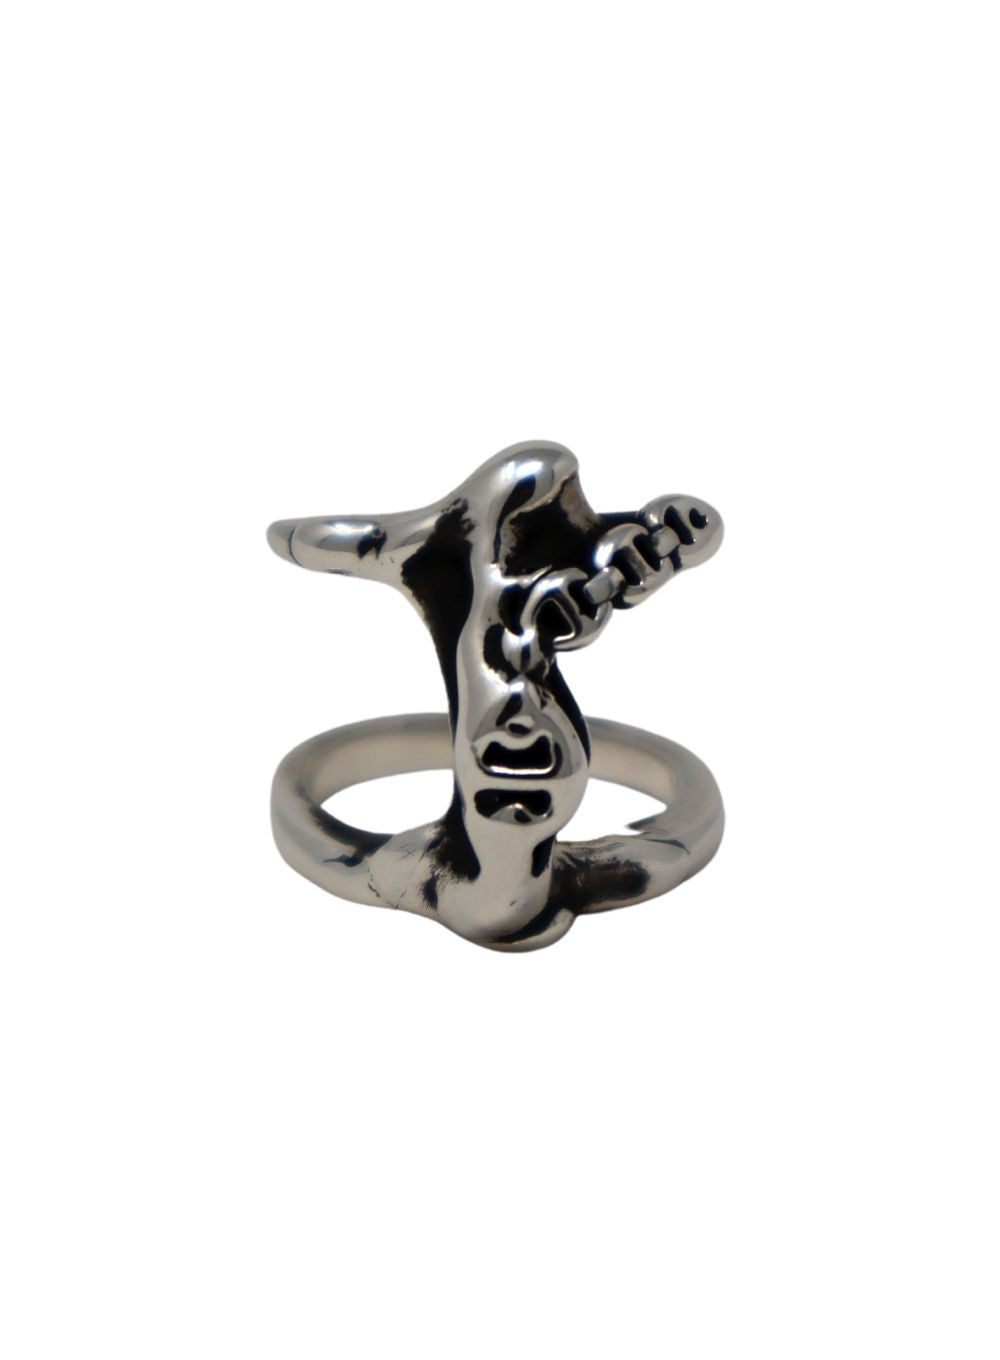 HOORSENBUHS | Sacred Melted Phantom Ring in Sterling Silver